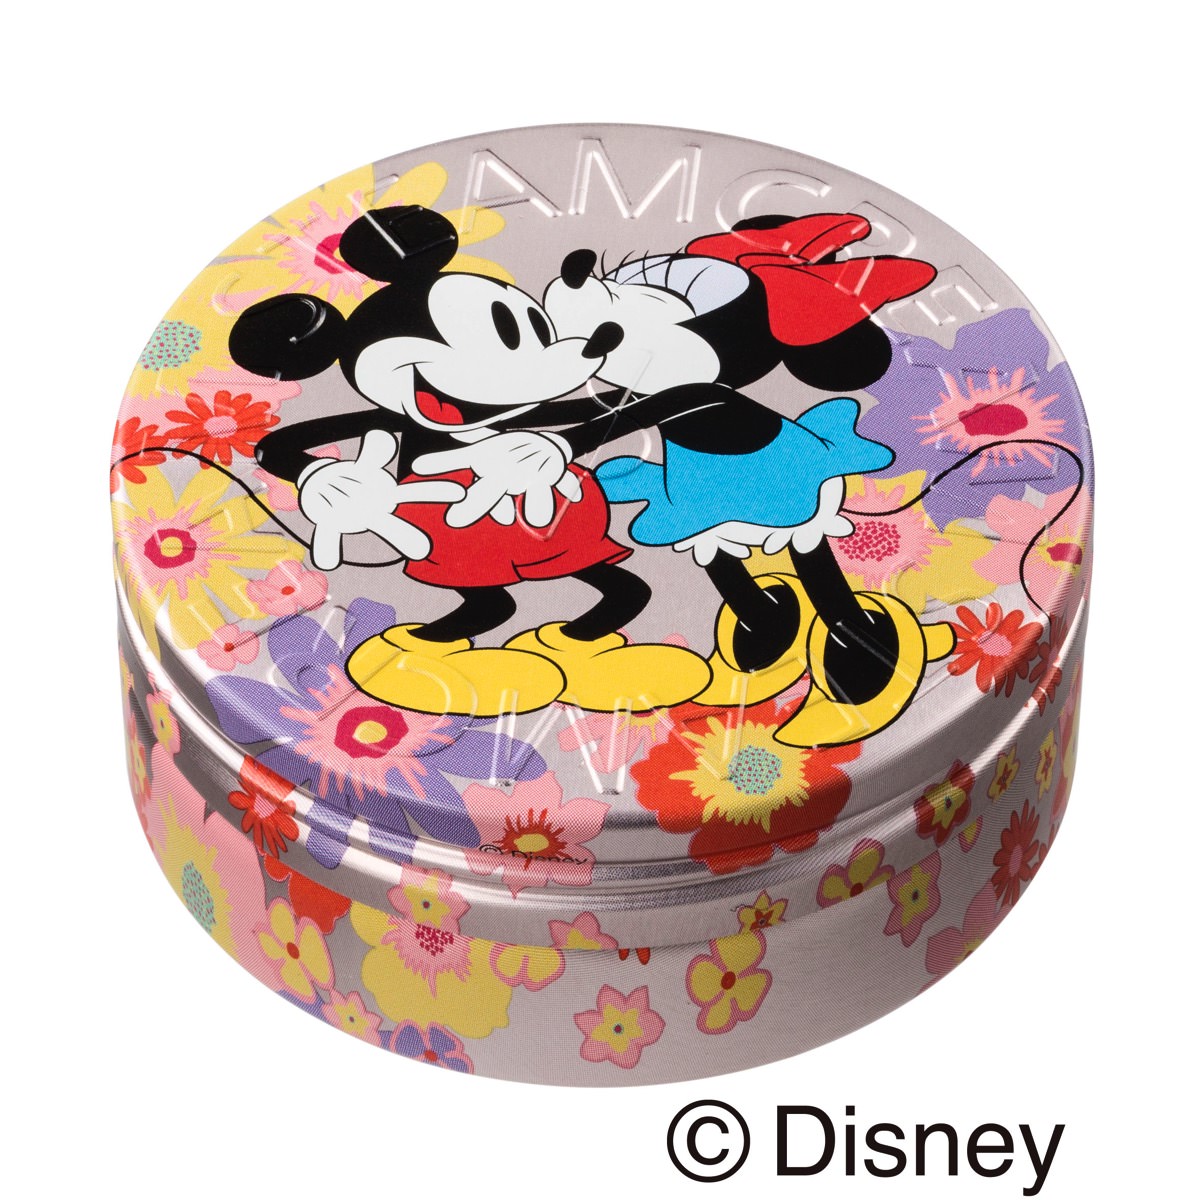 ディズニーを代表するカップルが登場 スチームクリーム ディズニーデザイン缶 Mickey Minnie Kiss Donald Daisy Love Dtimes